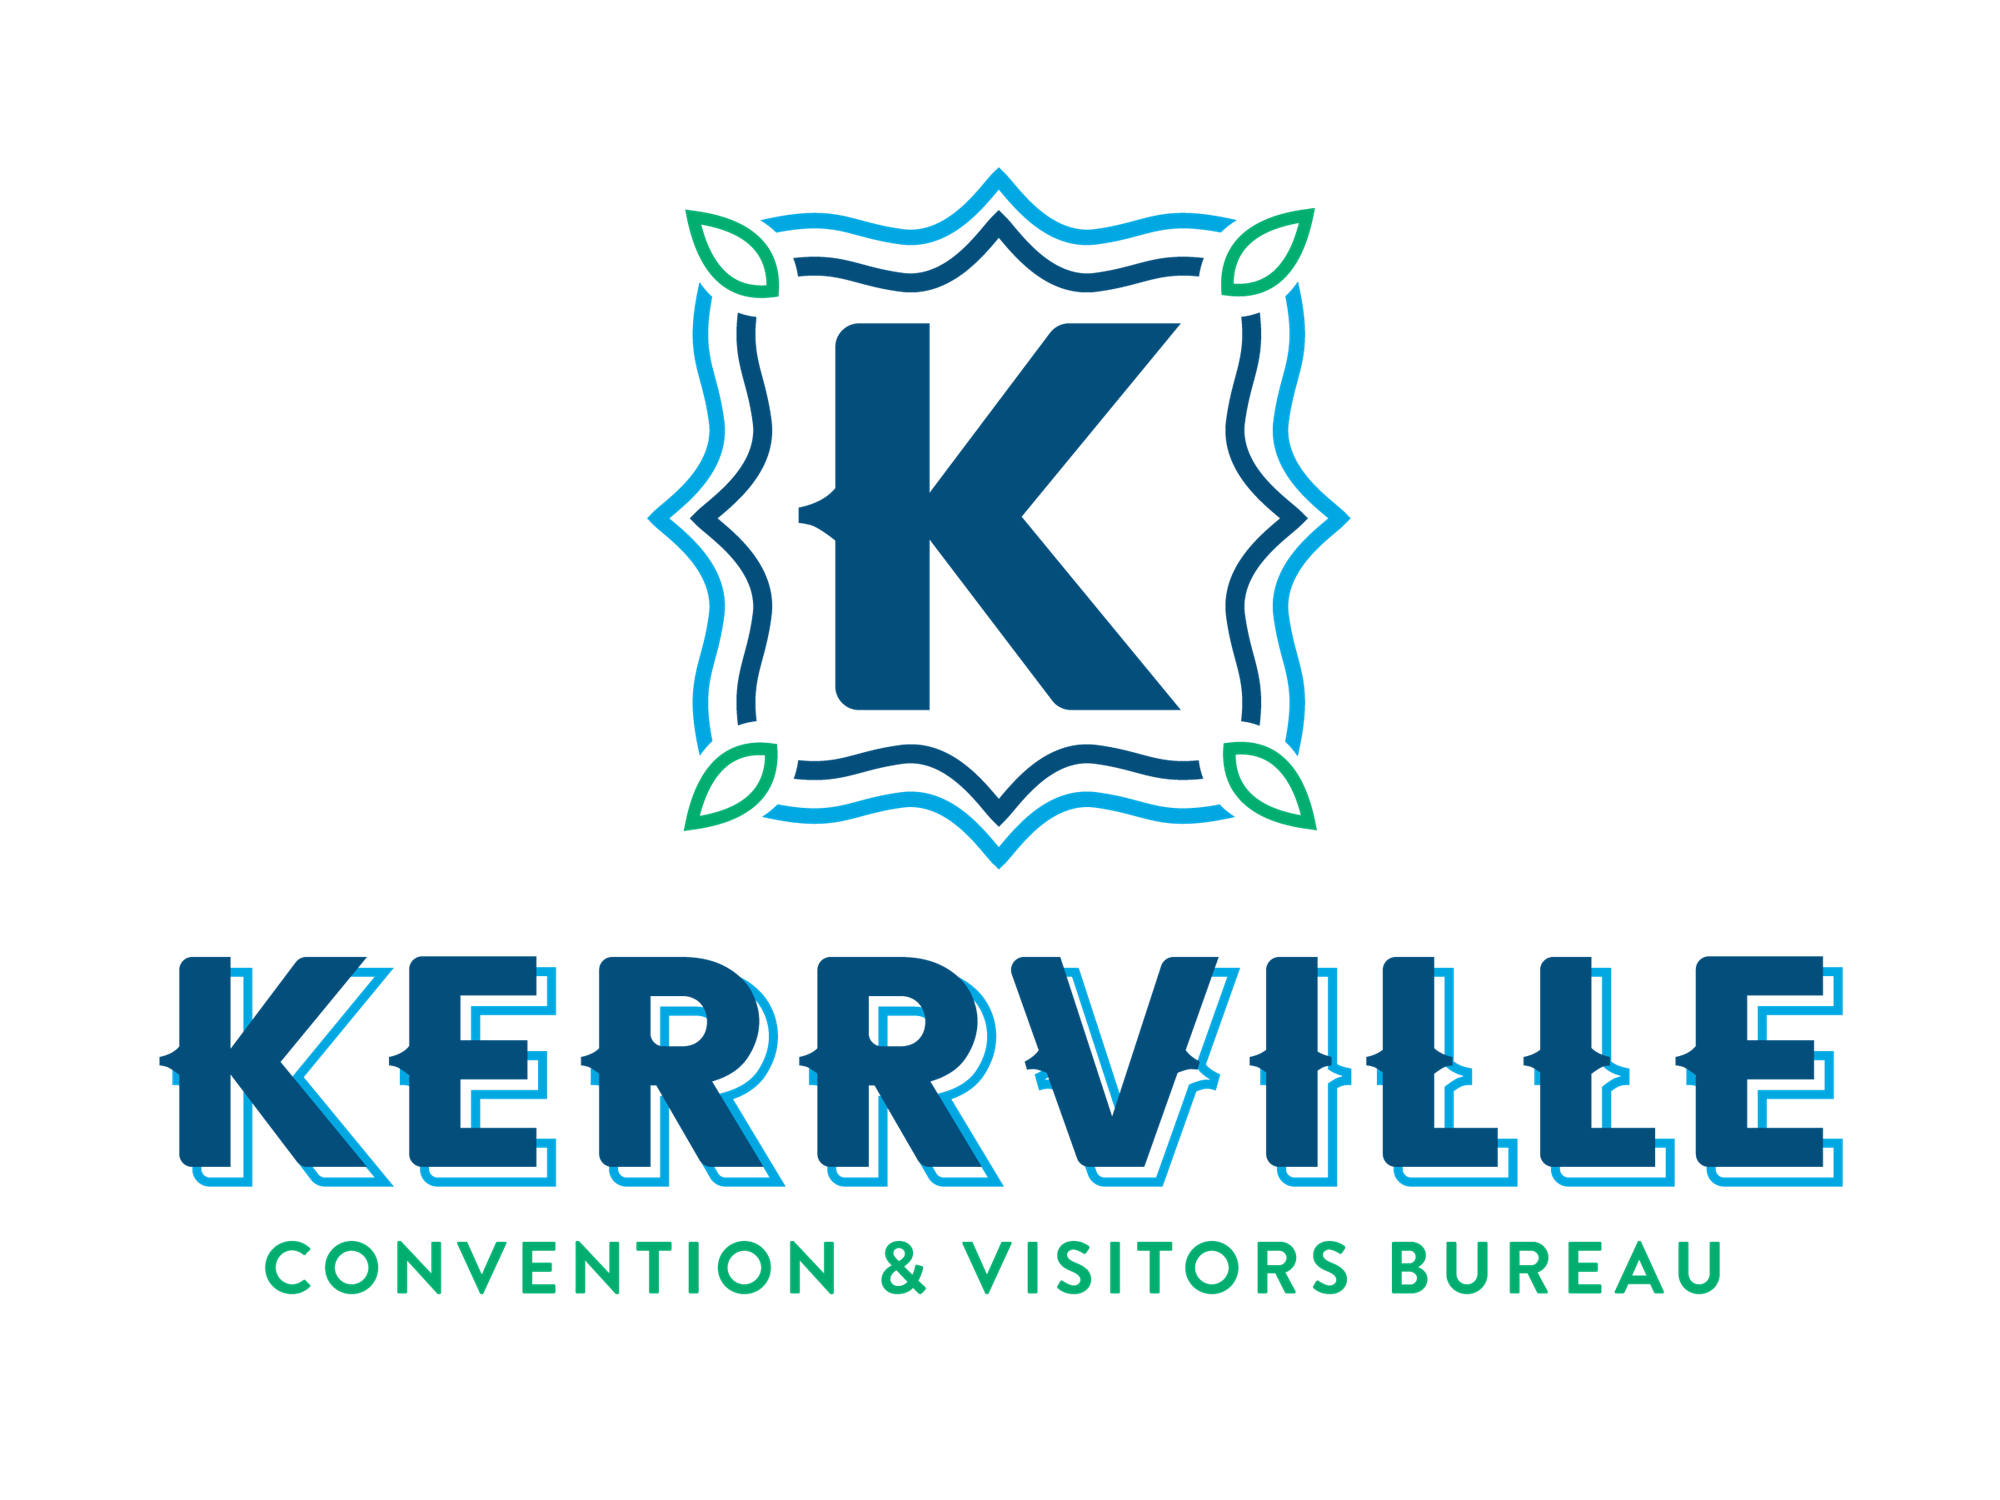 (c) Kerrvilletexascvb.com